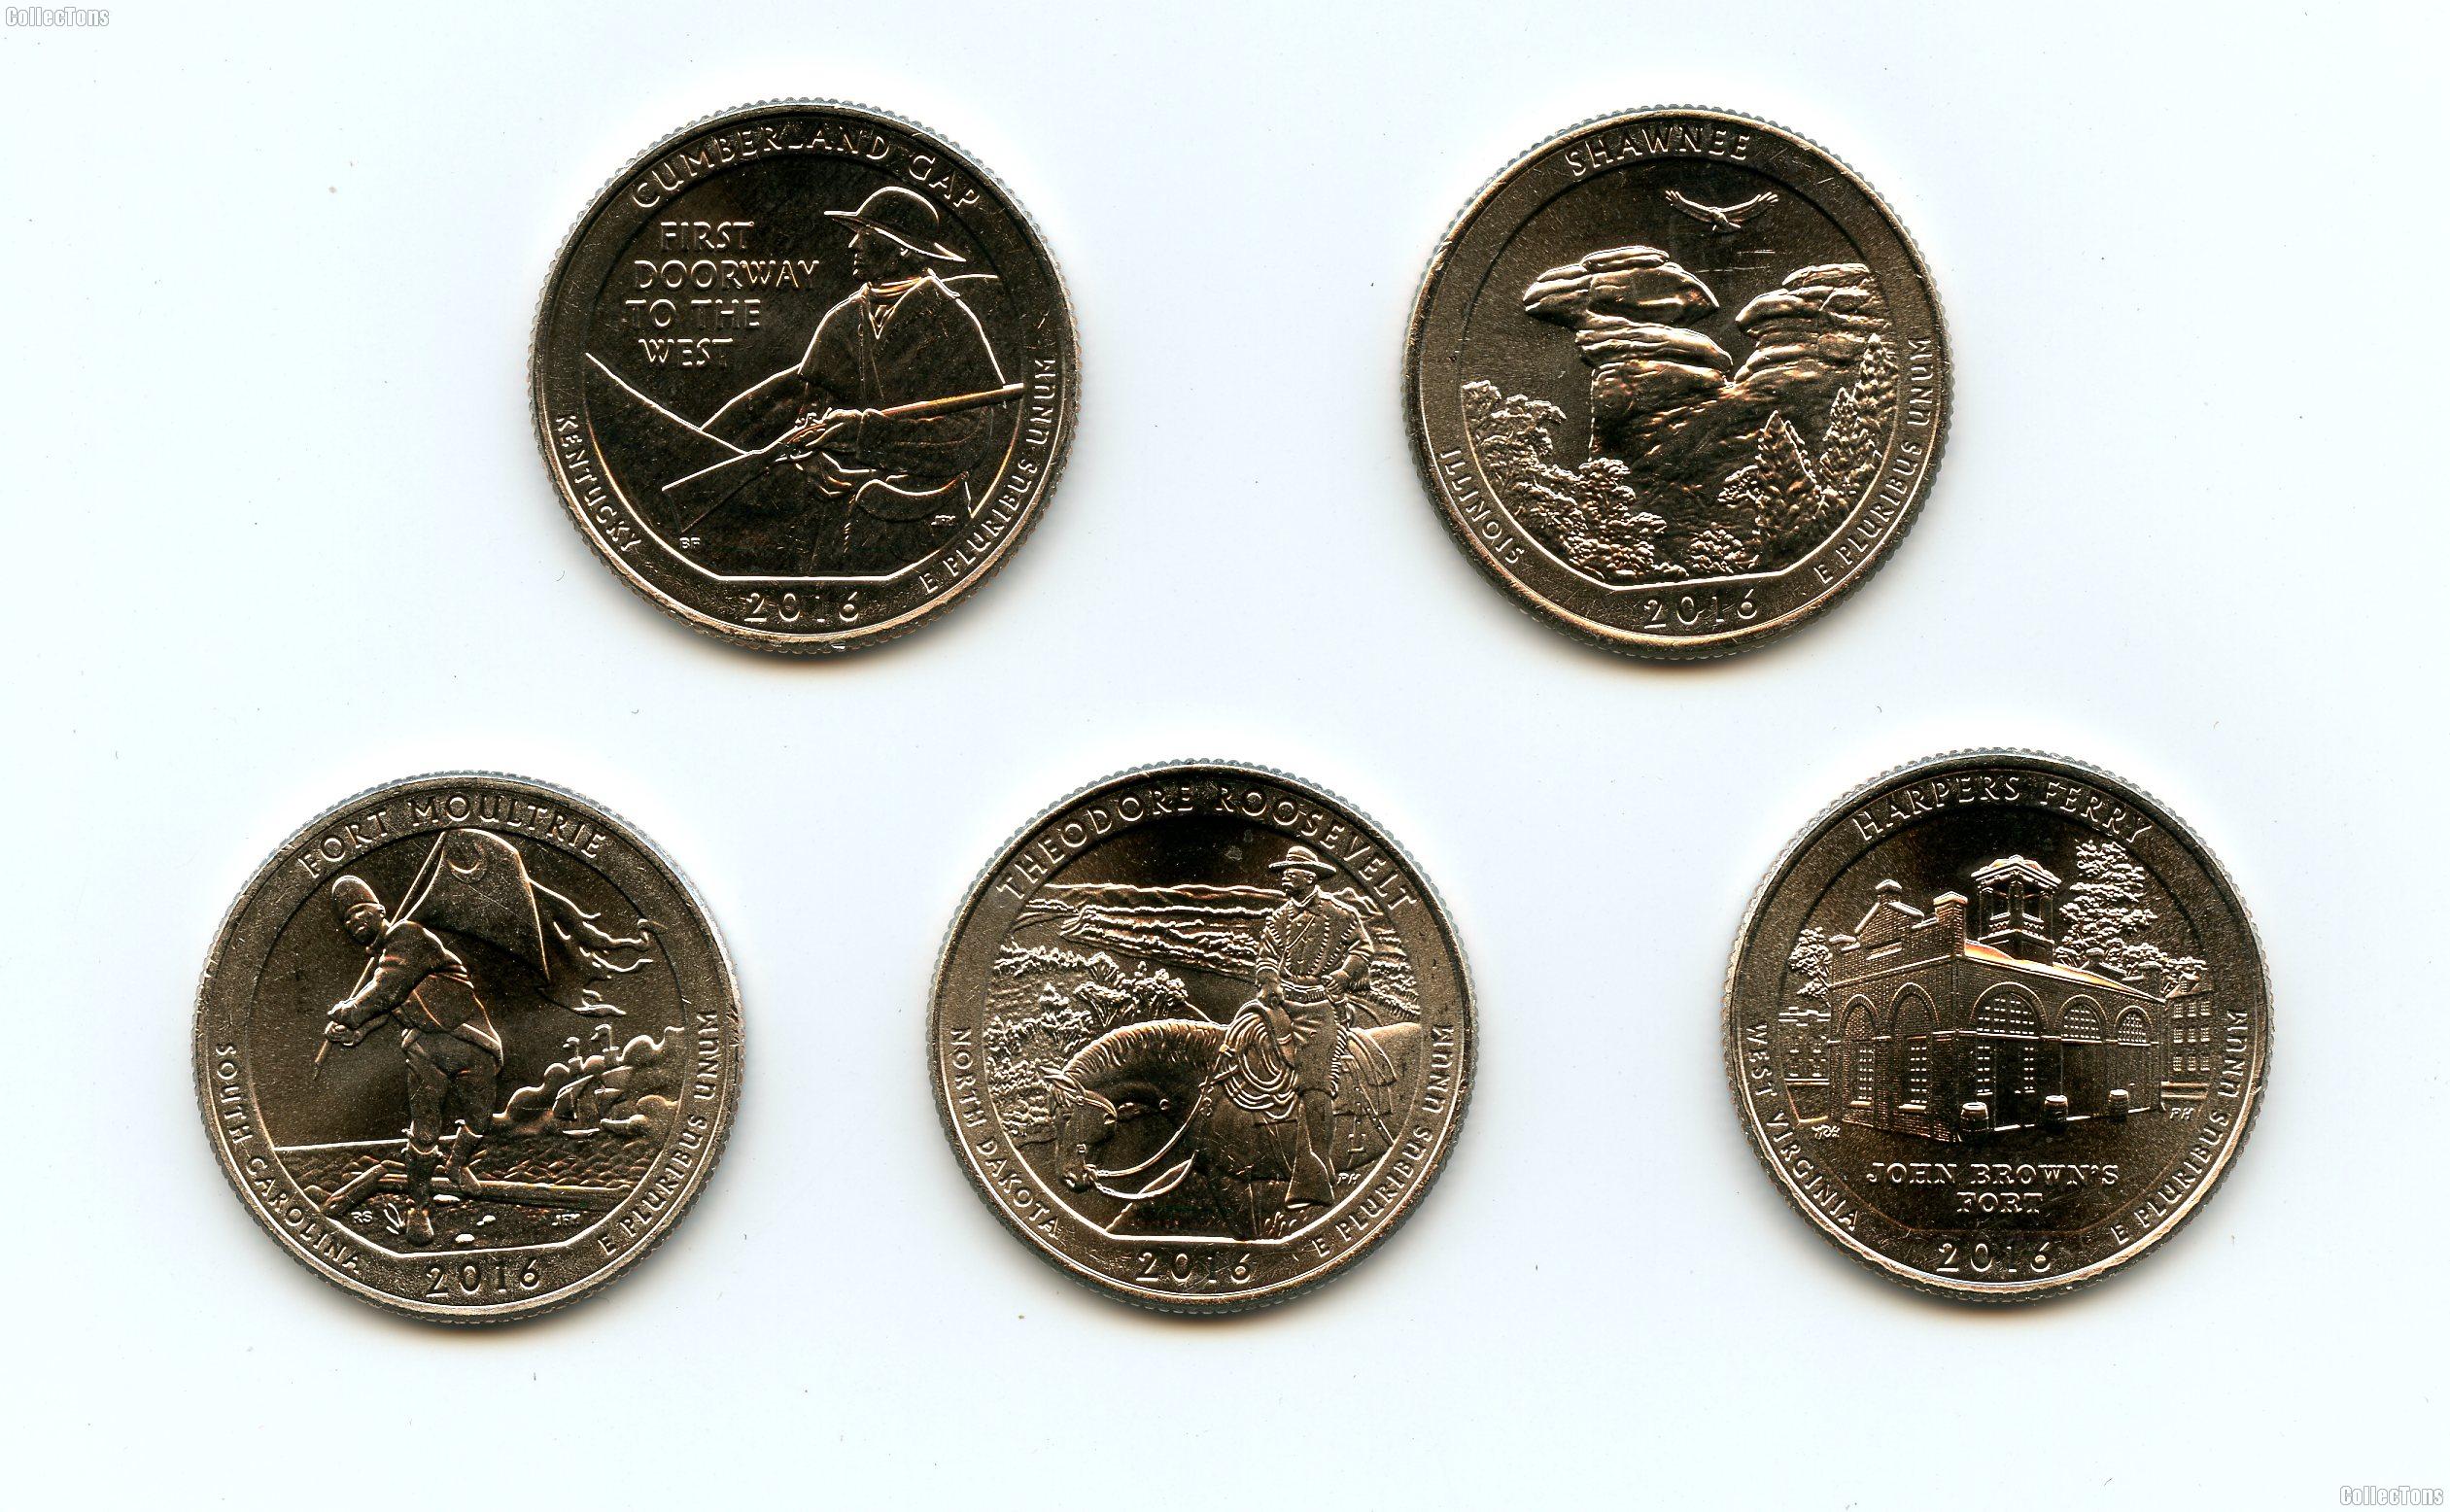 2016 National Park Quarters Complete Set Philadelphia (P) Mint Uncirculated (5 Coins) IL, KY, WV, ND, SC